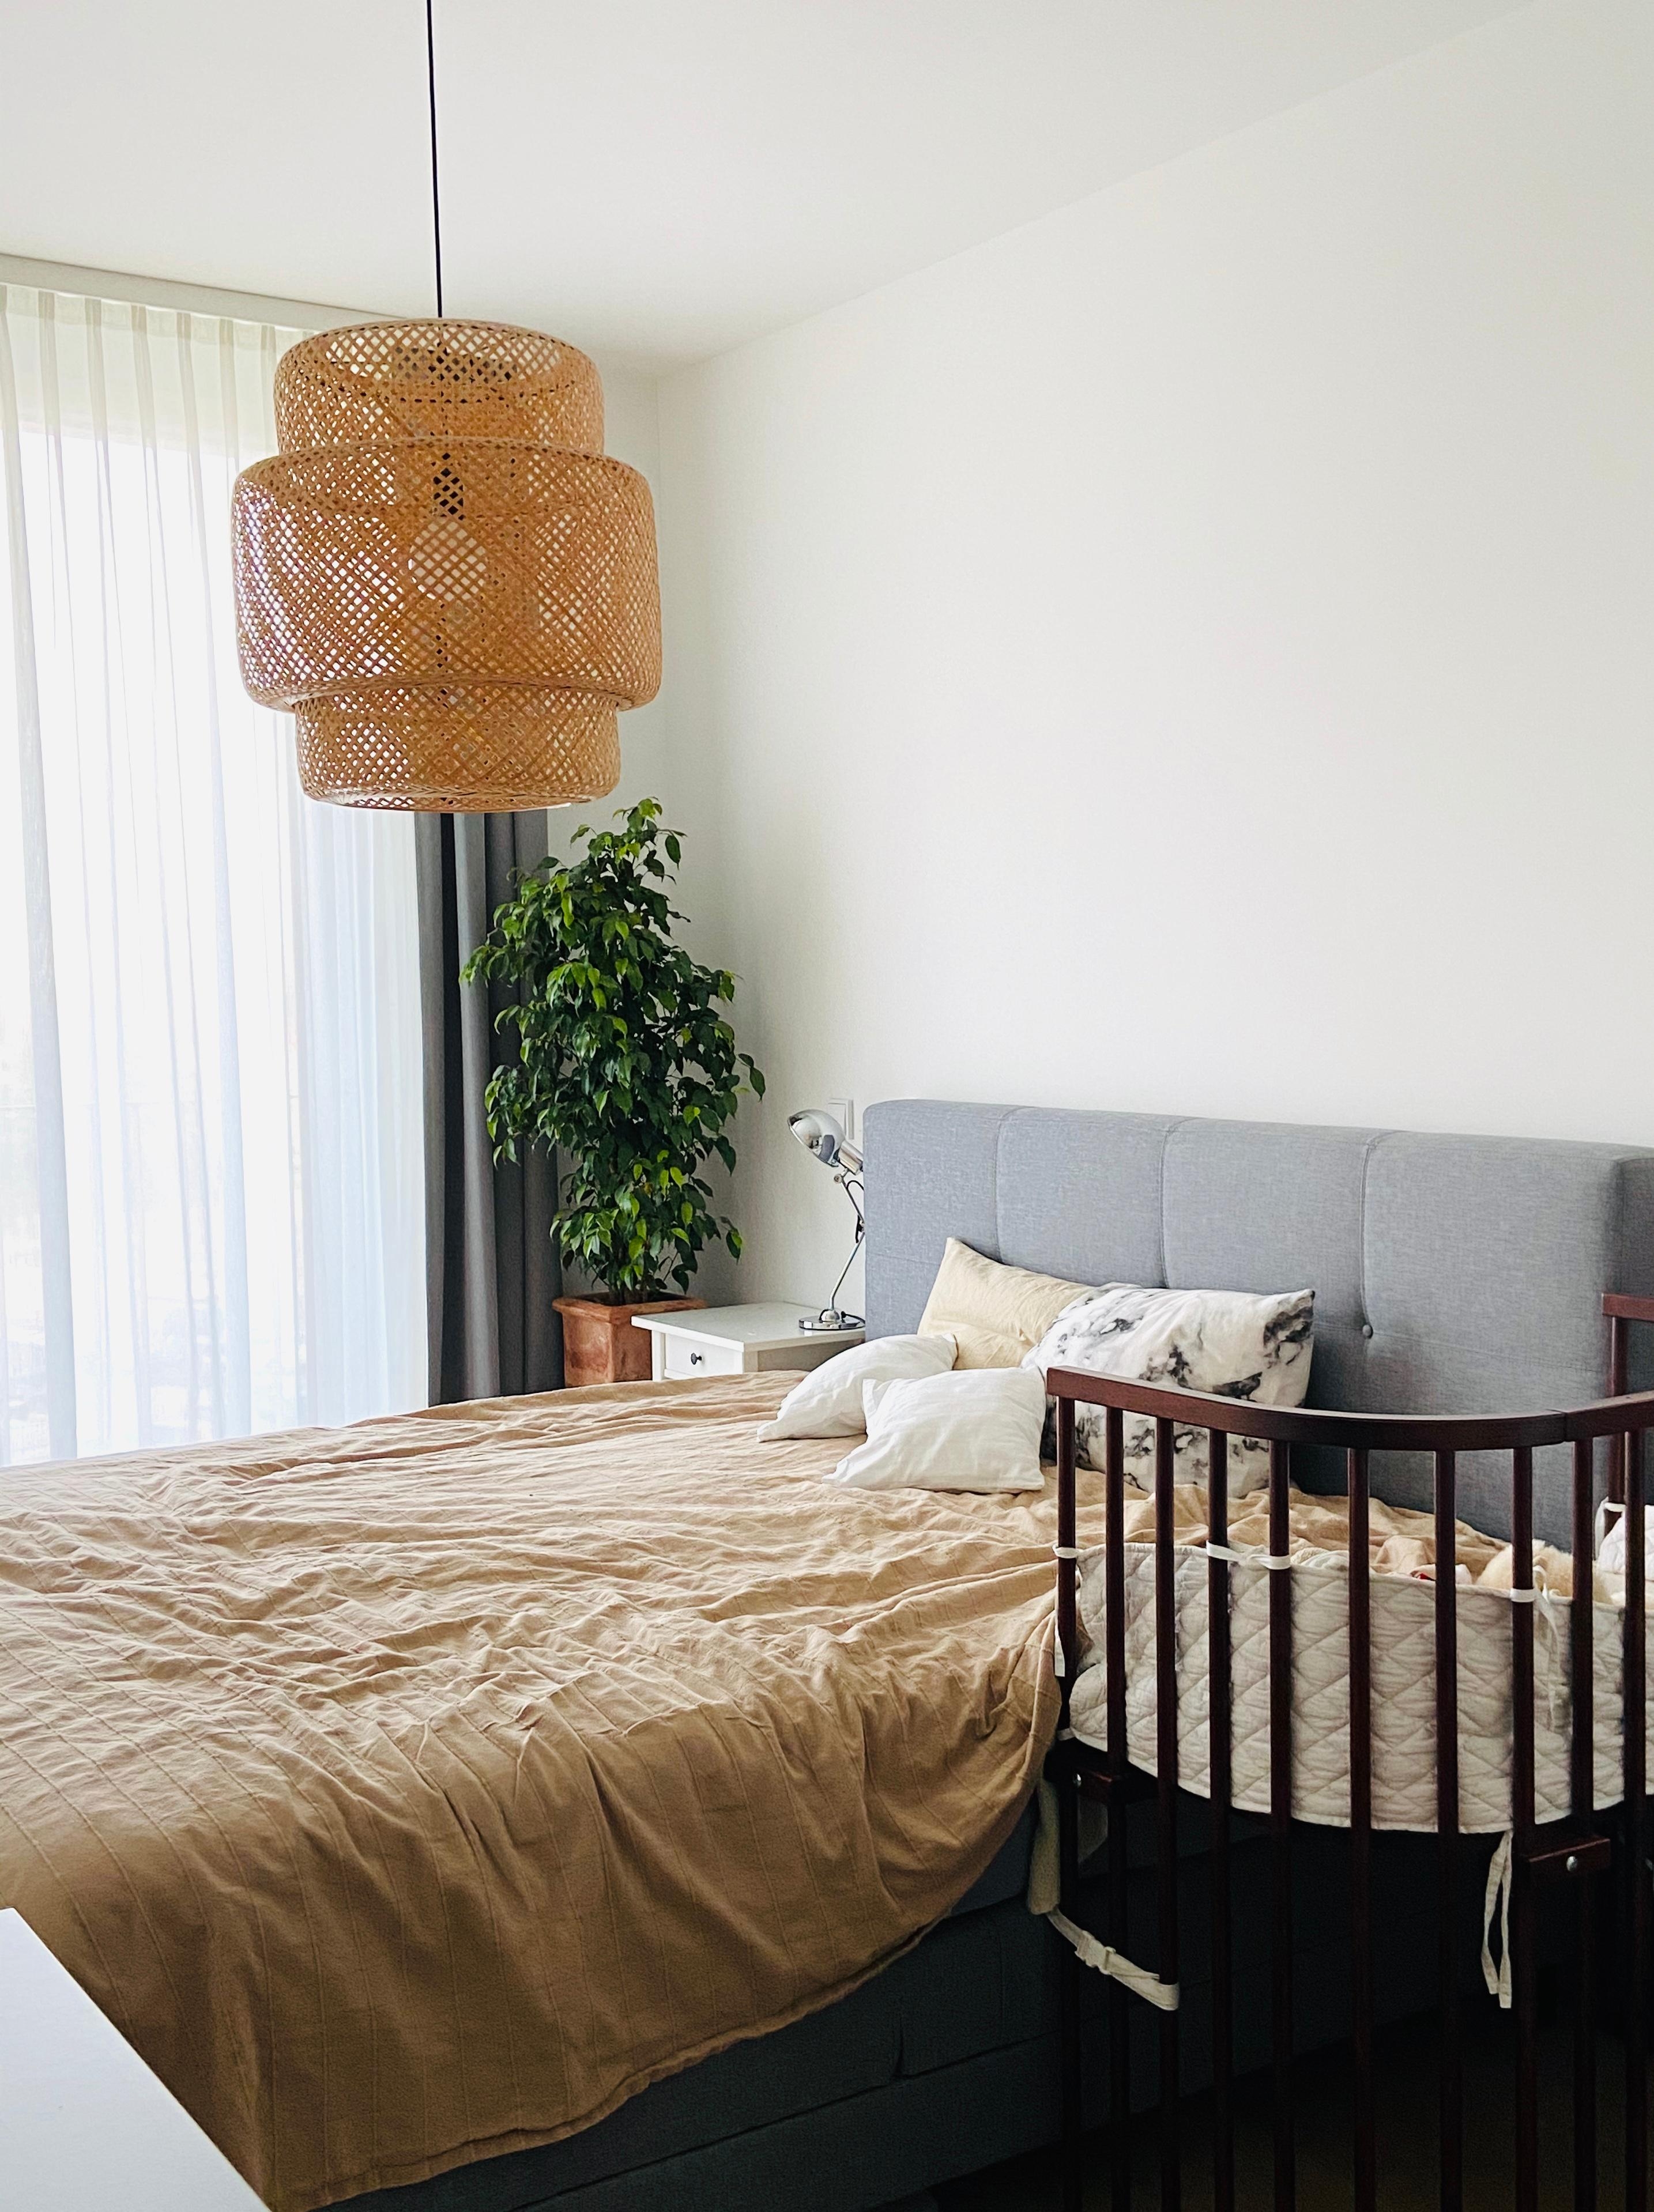 #schlafzimmer #minimalistisch #grau
Ich mag die unaufgeregte Stimmung im Schlafzimmer 